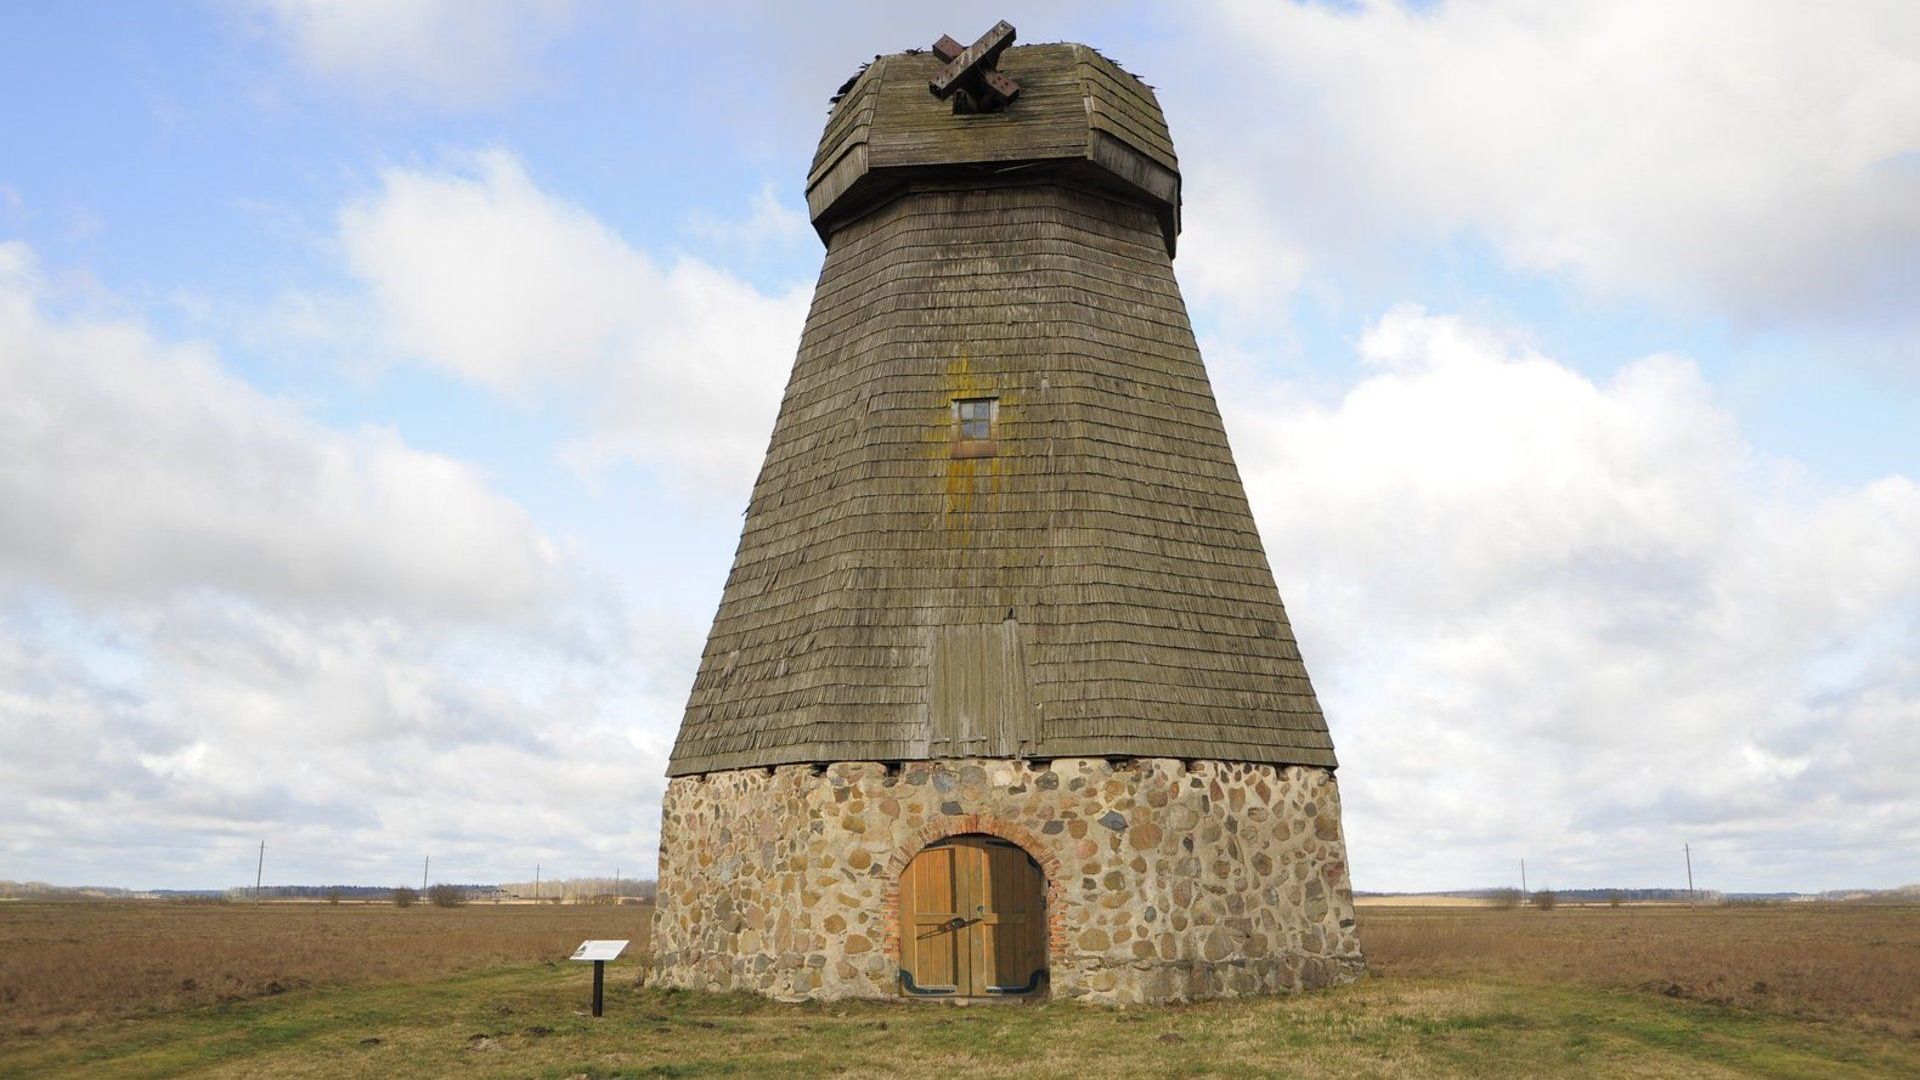 Radviliškis Windmill